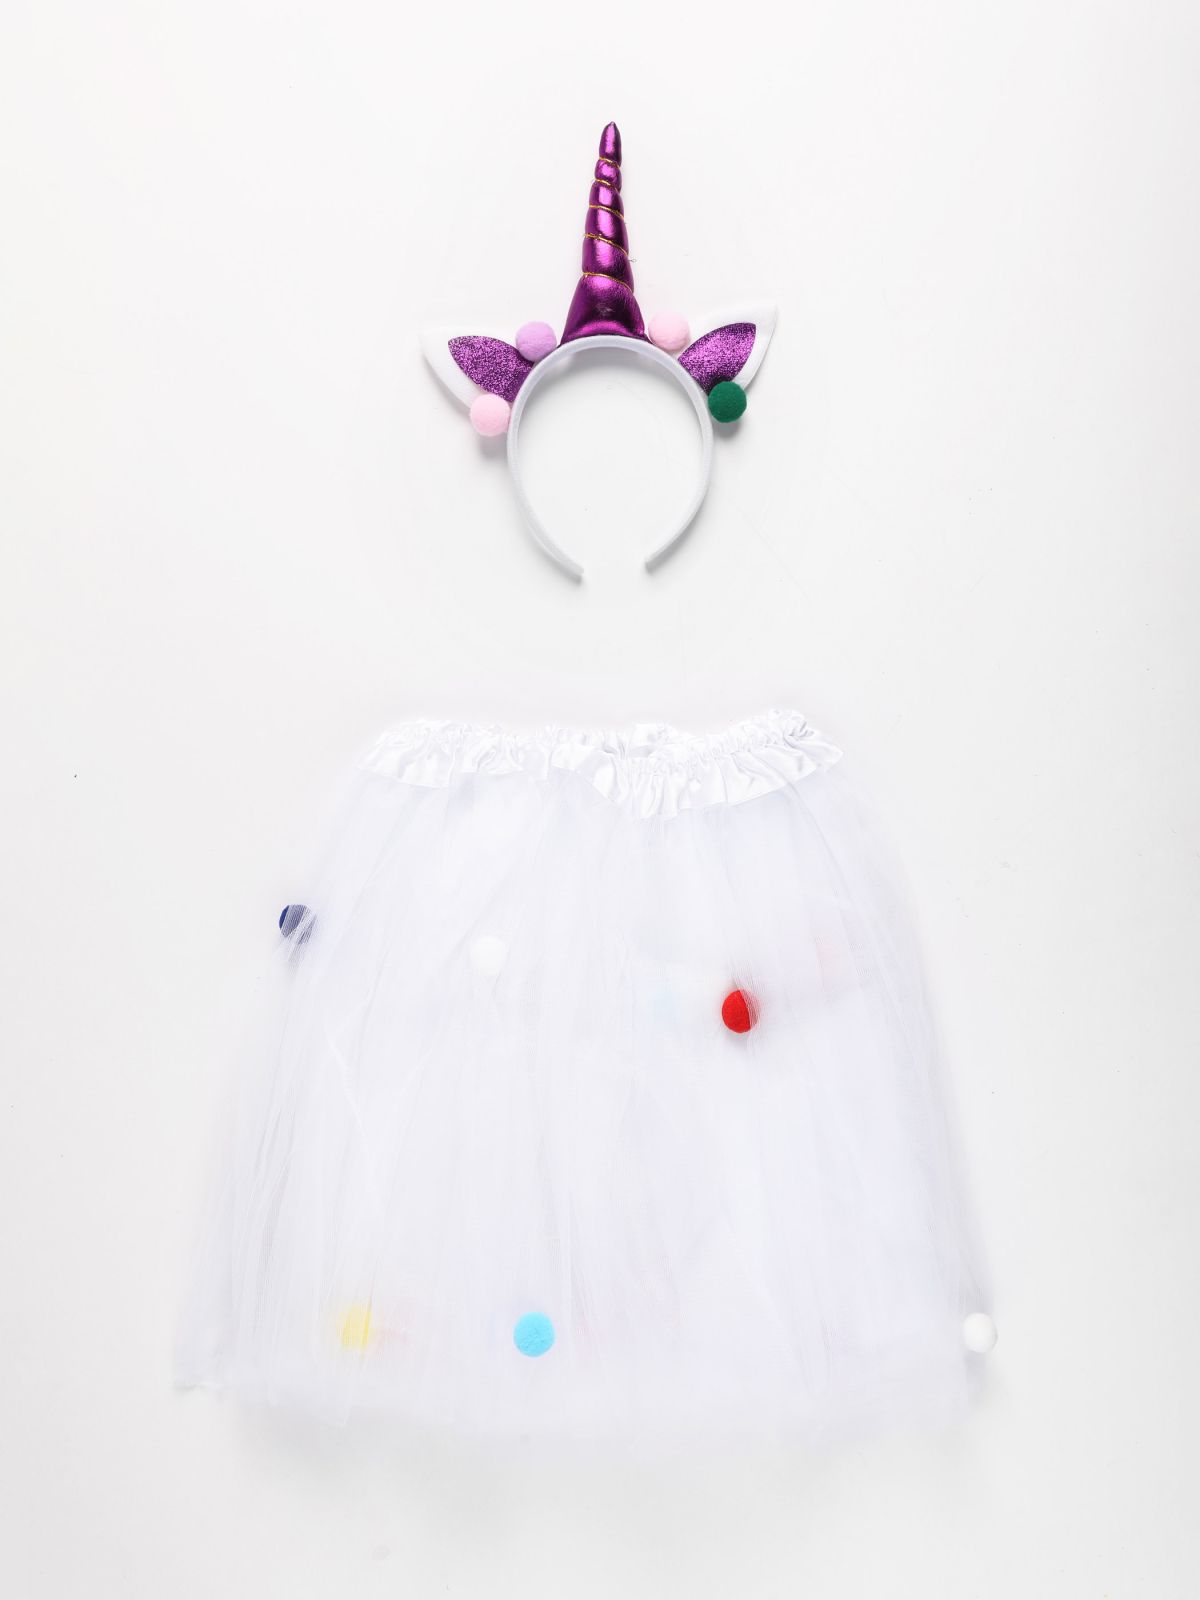  סט קשת וחצאית יוניקורן / Purim Collection של SHOSHI ZOHAR